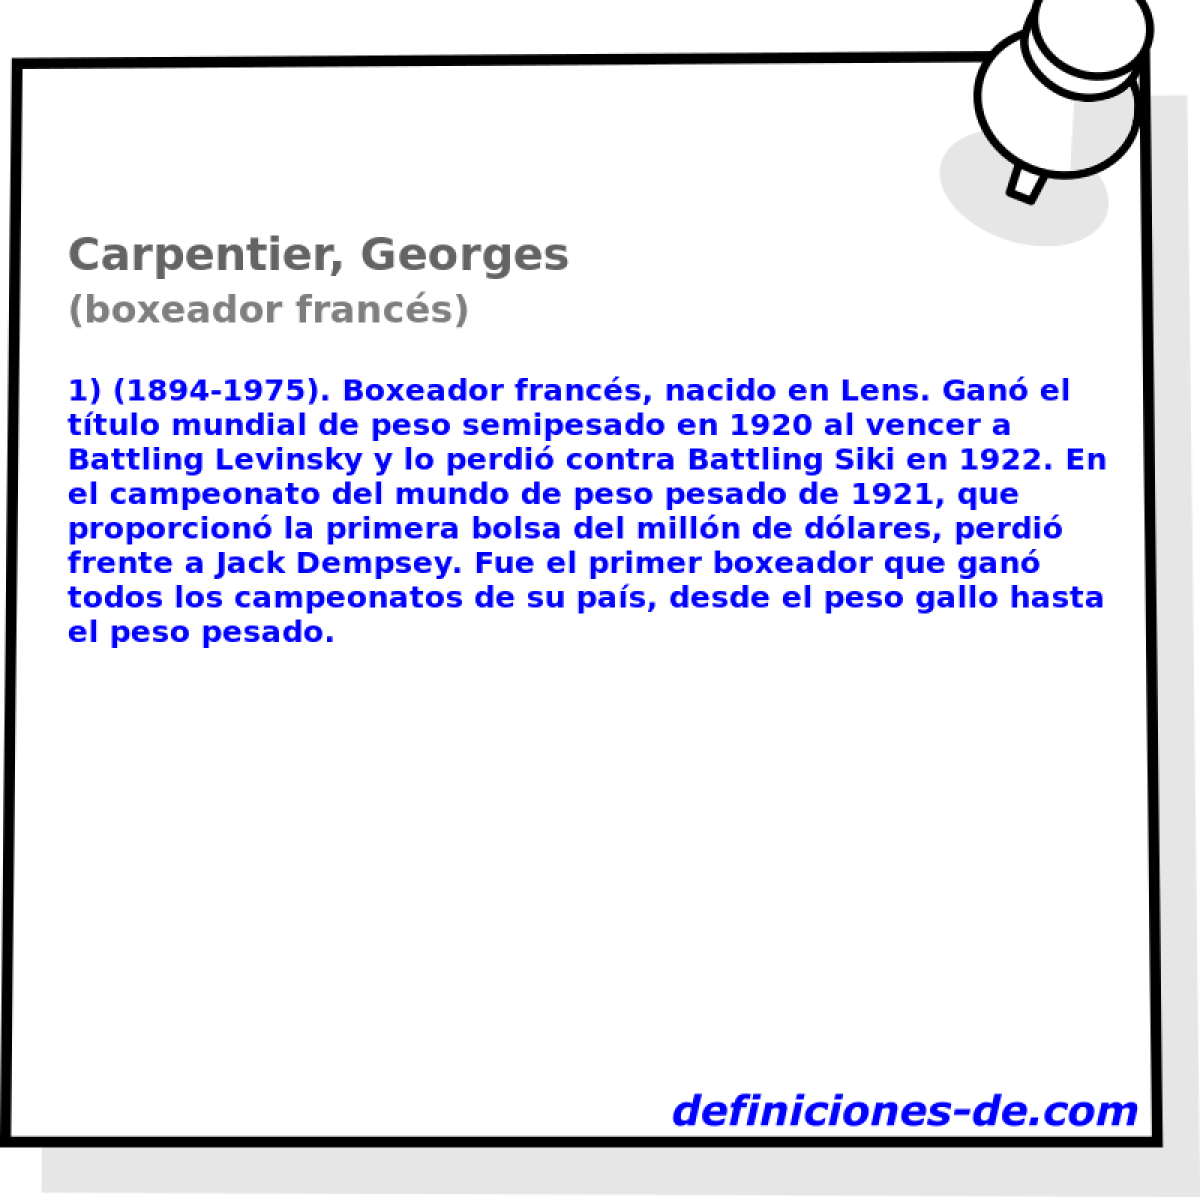 Carpentier, Georges (boxeador francs)